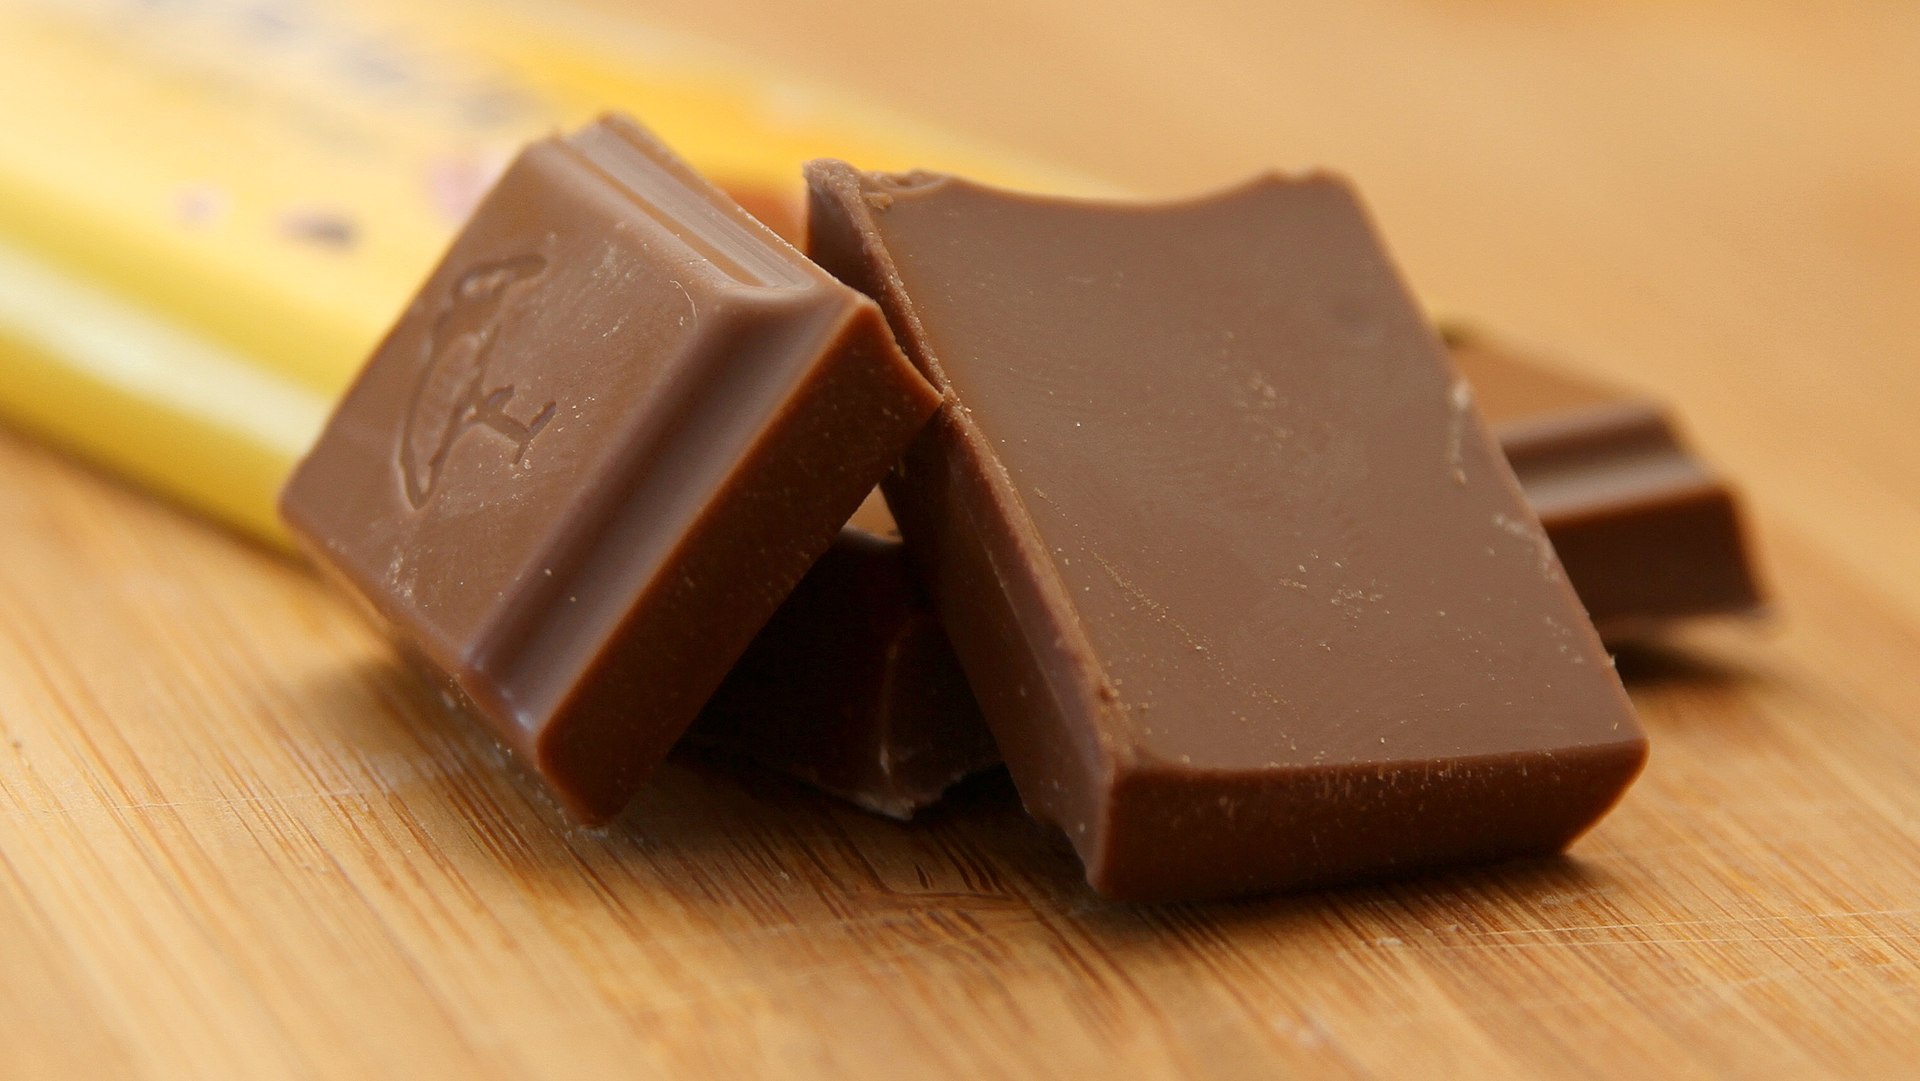 Norwegian Freia chocolate